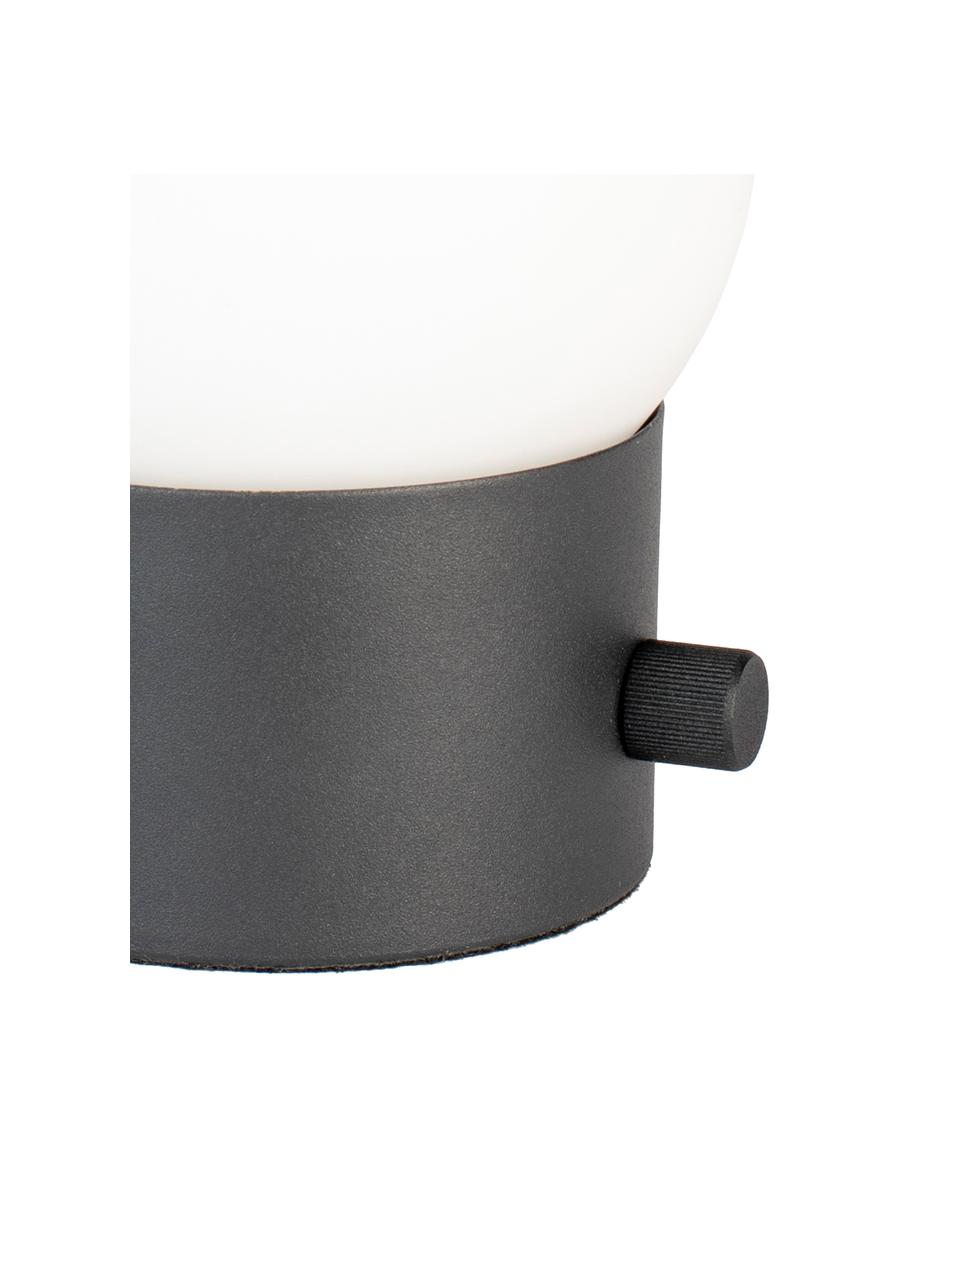 Kleine Dimmbare Nachttischlampe Urban mit USB-Anschluss, Lampenschirm: Opalglas, Schwarz, Weiss, Ø 13 x H 25 cm